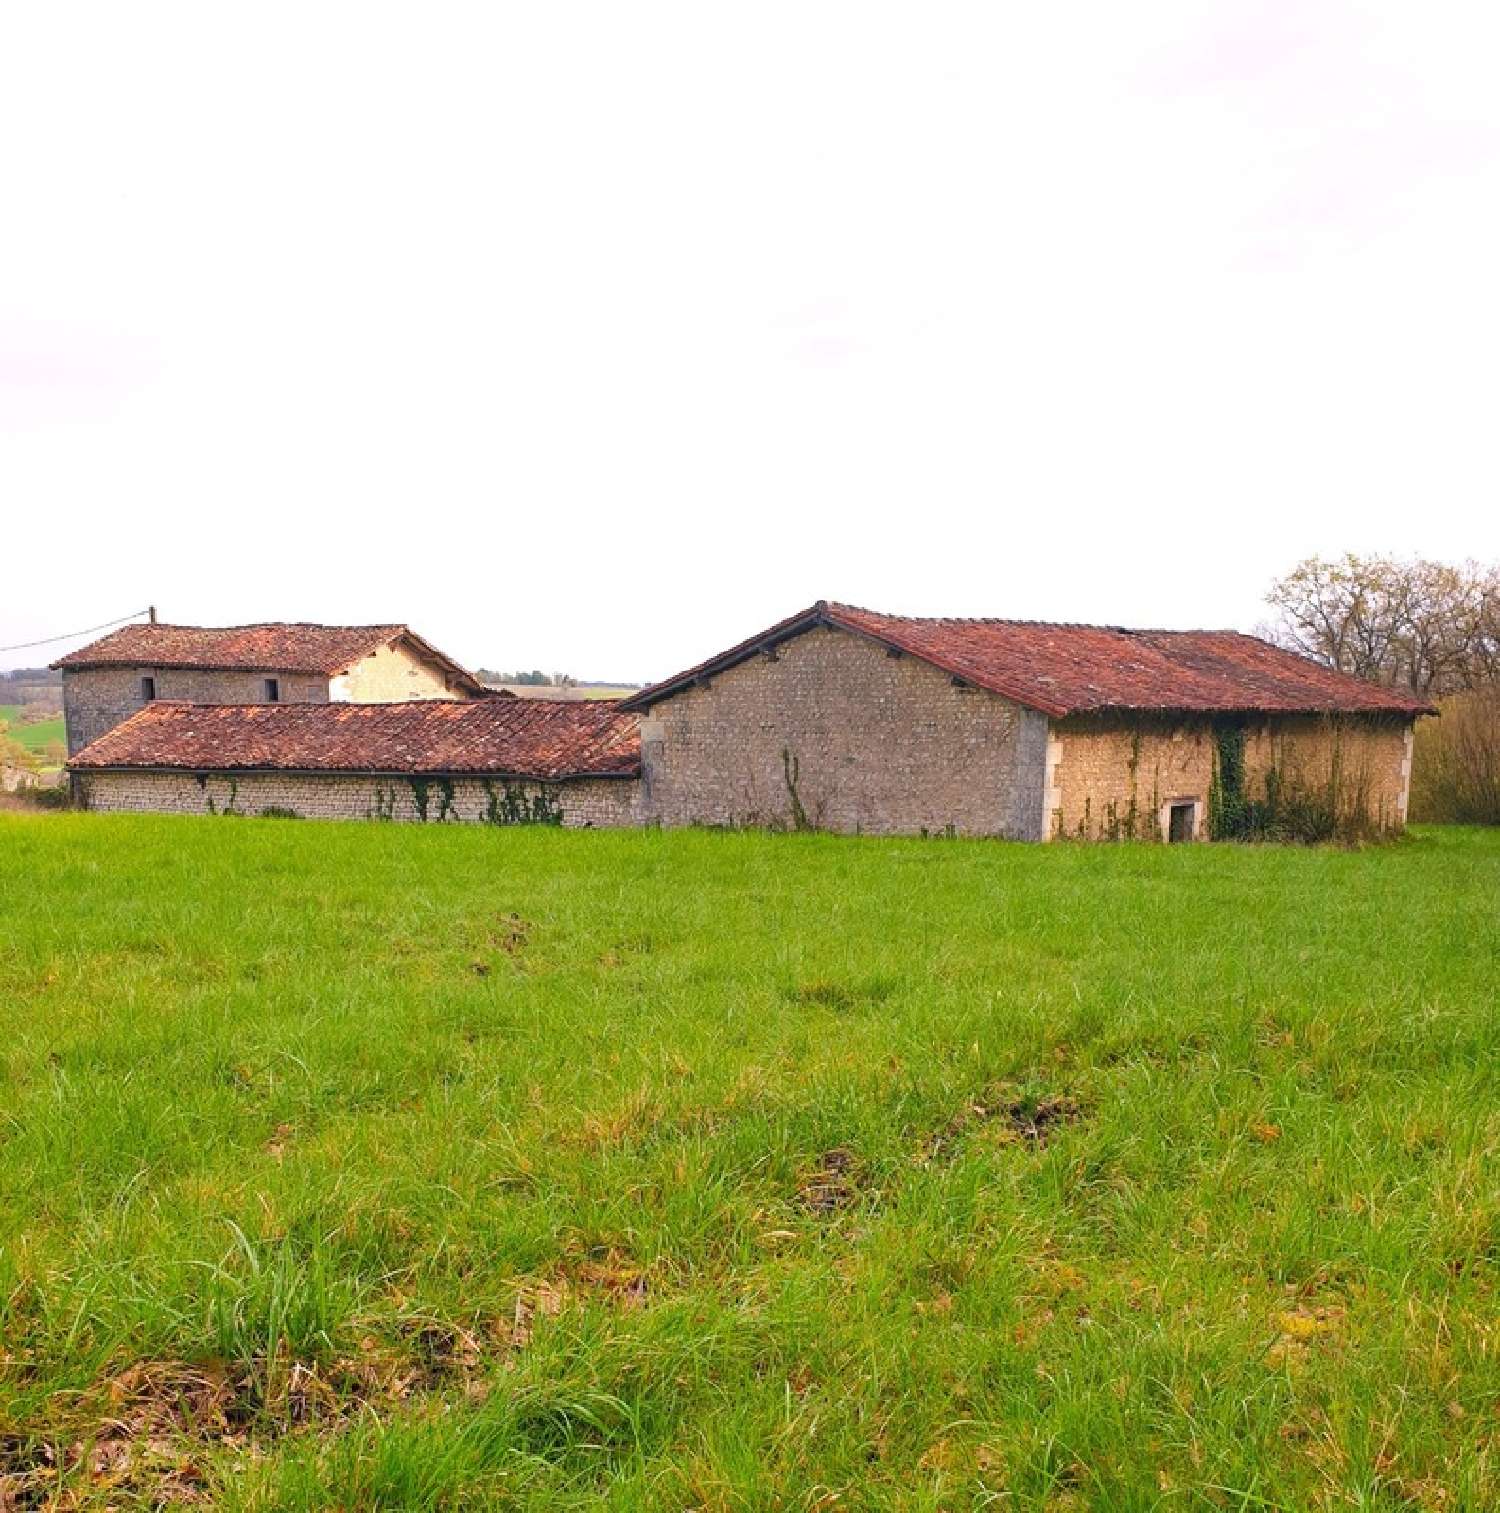  à vendre maison Porcheresse Charente 2